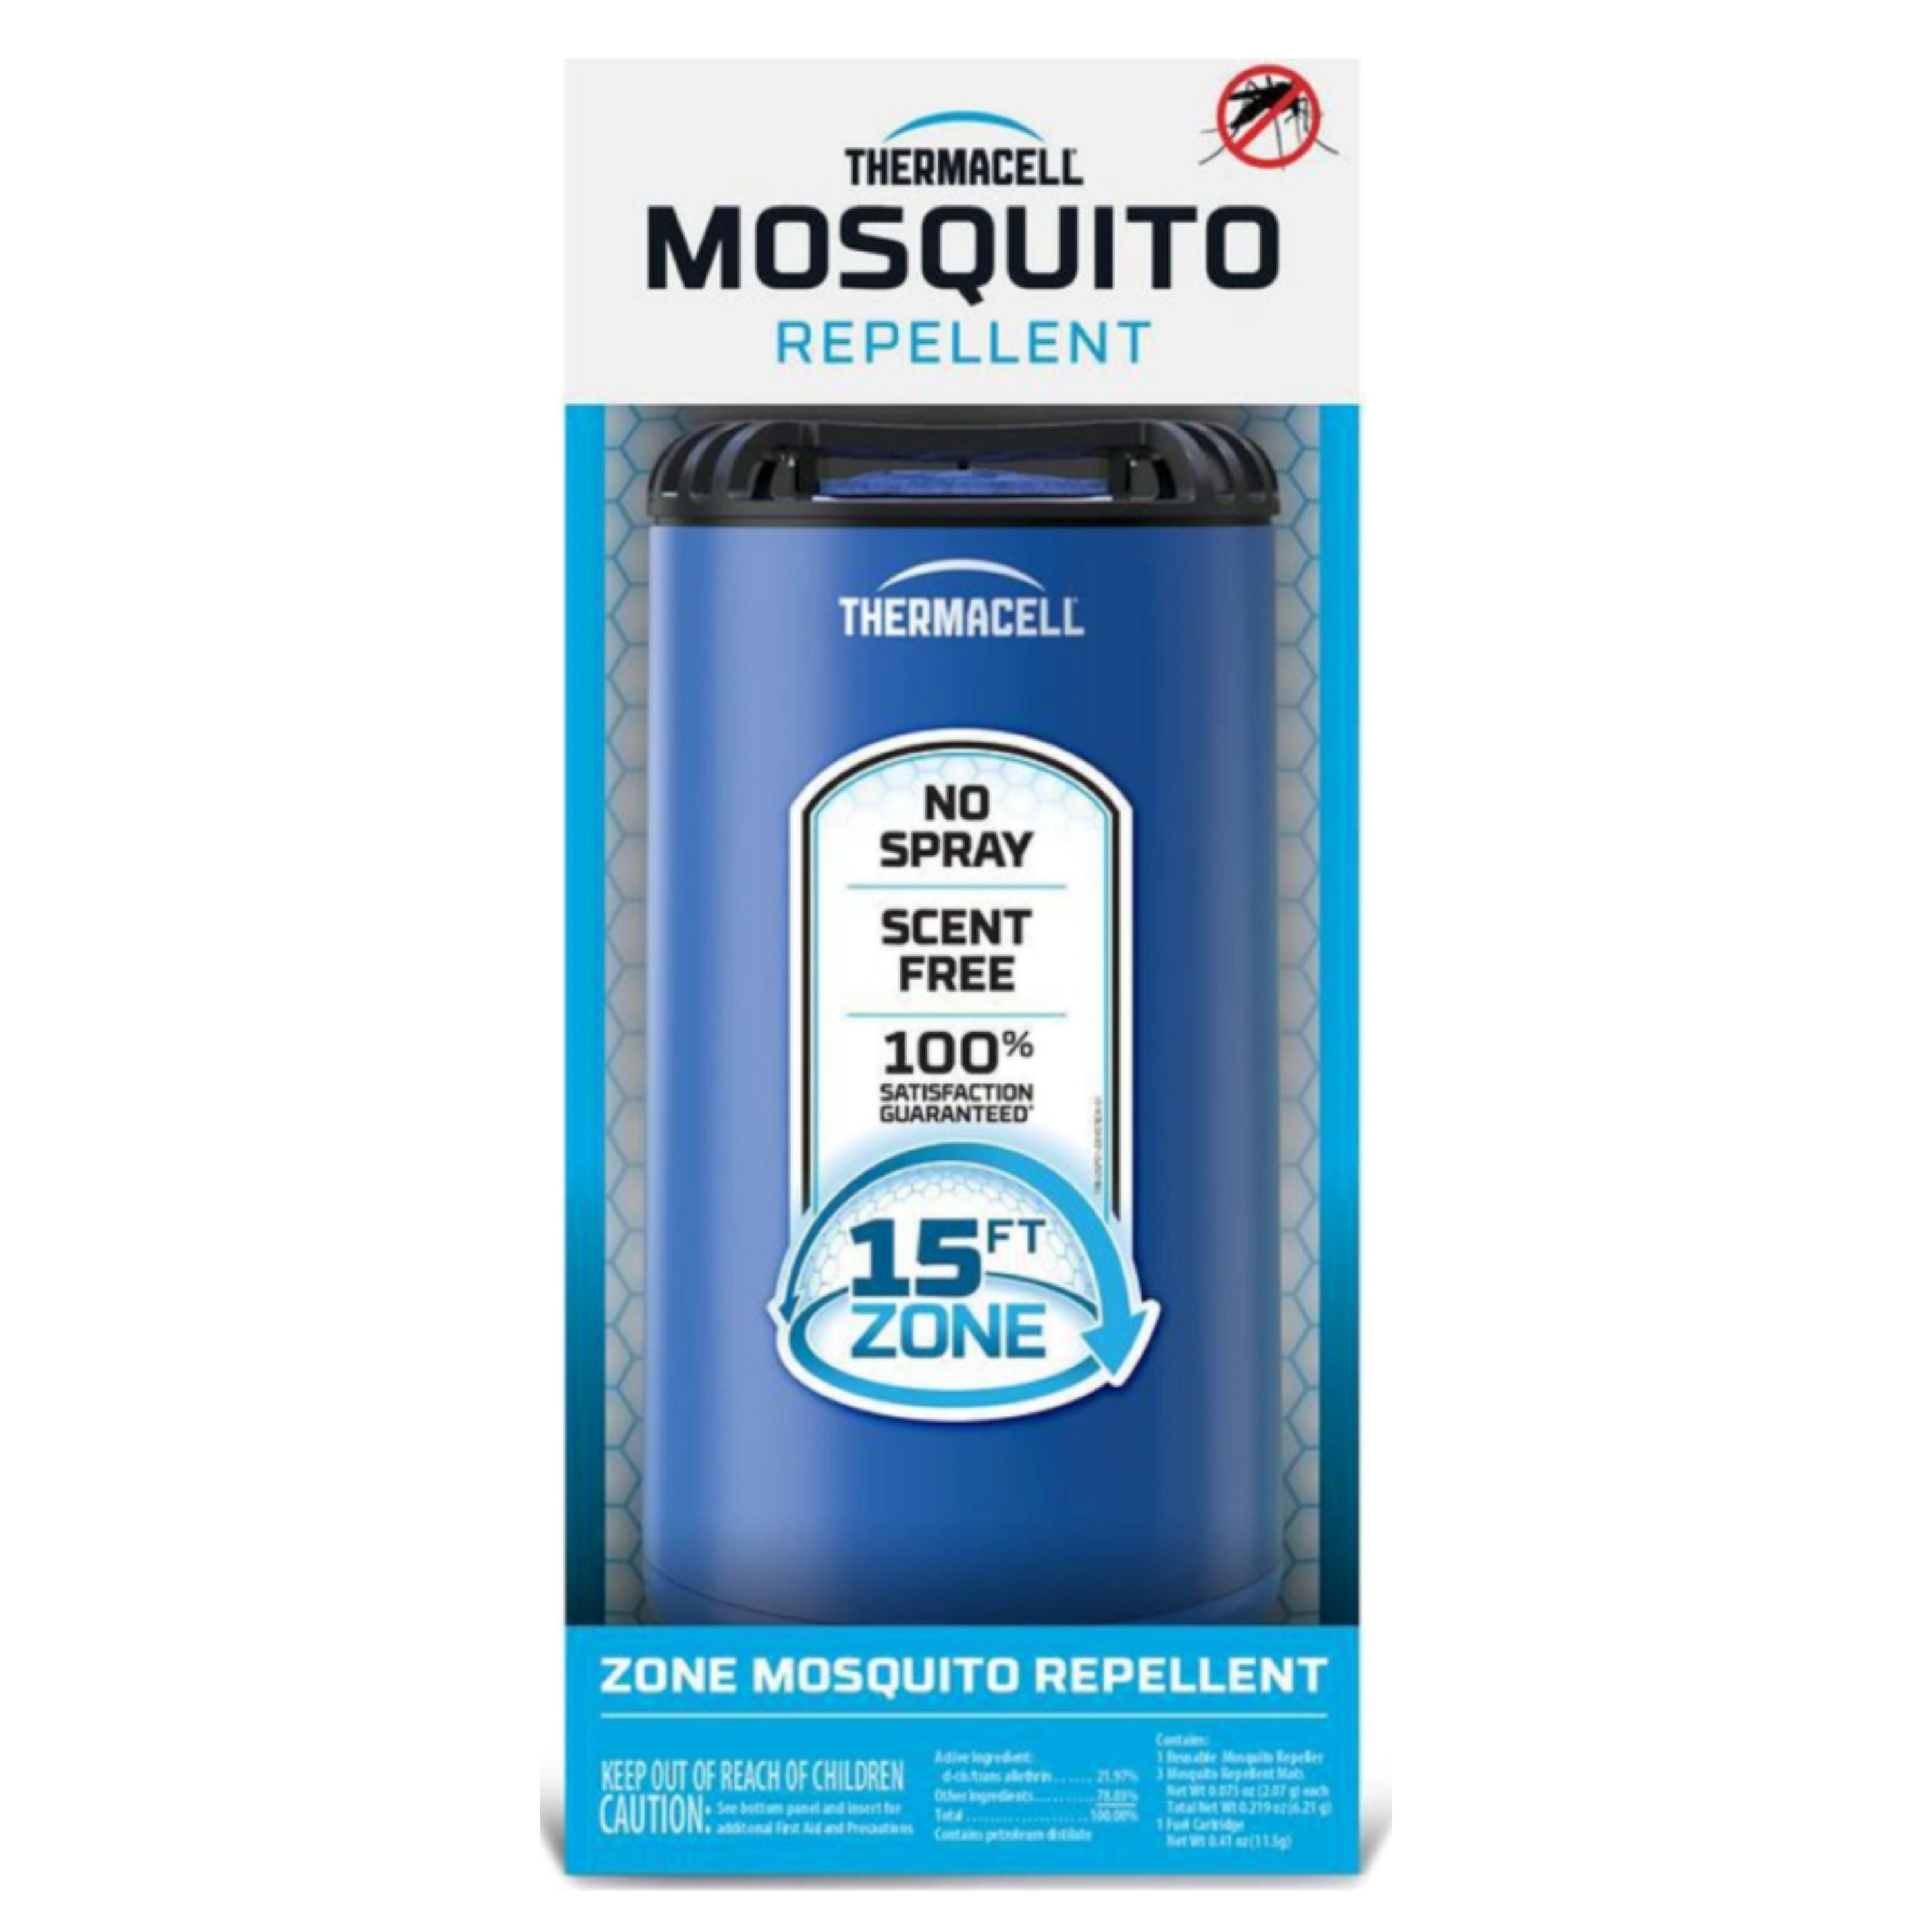 "Patio Shield" Mosquito repellent